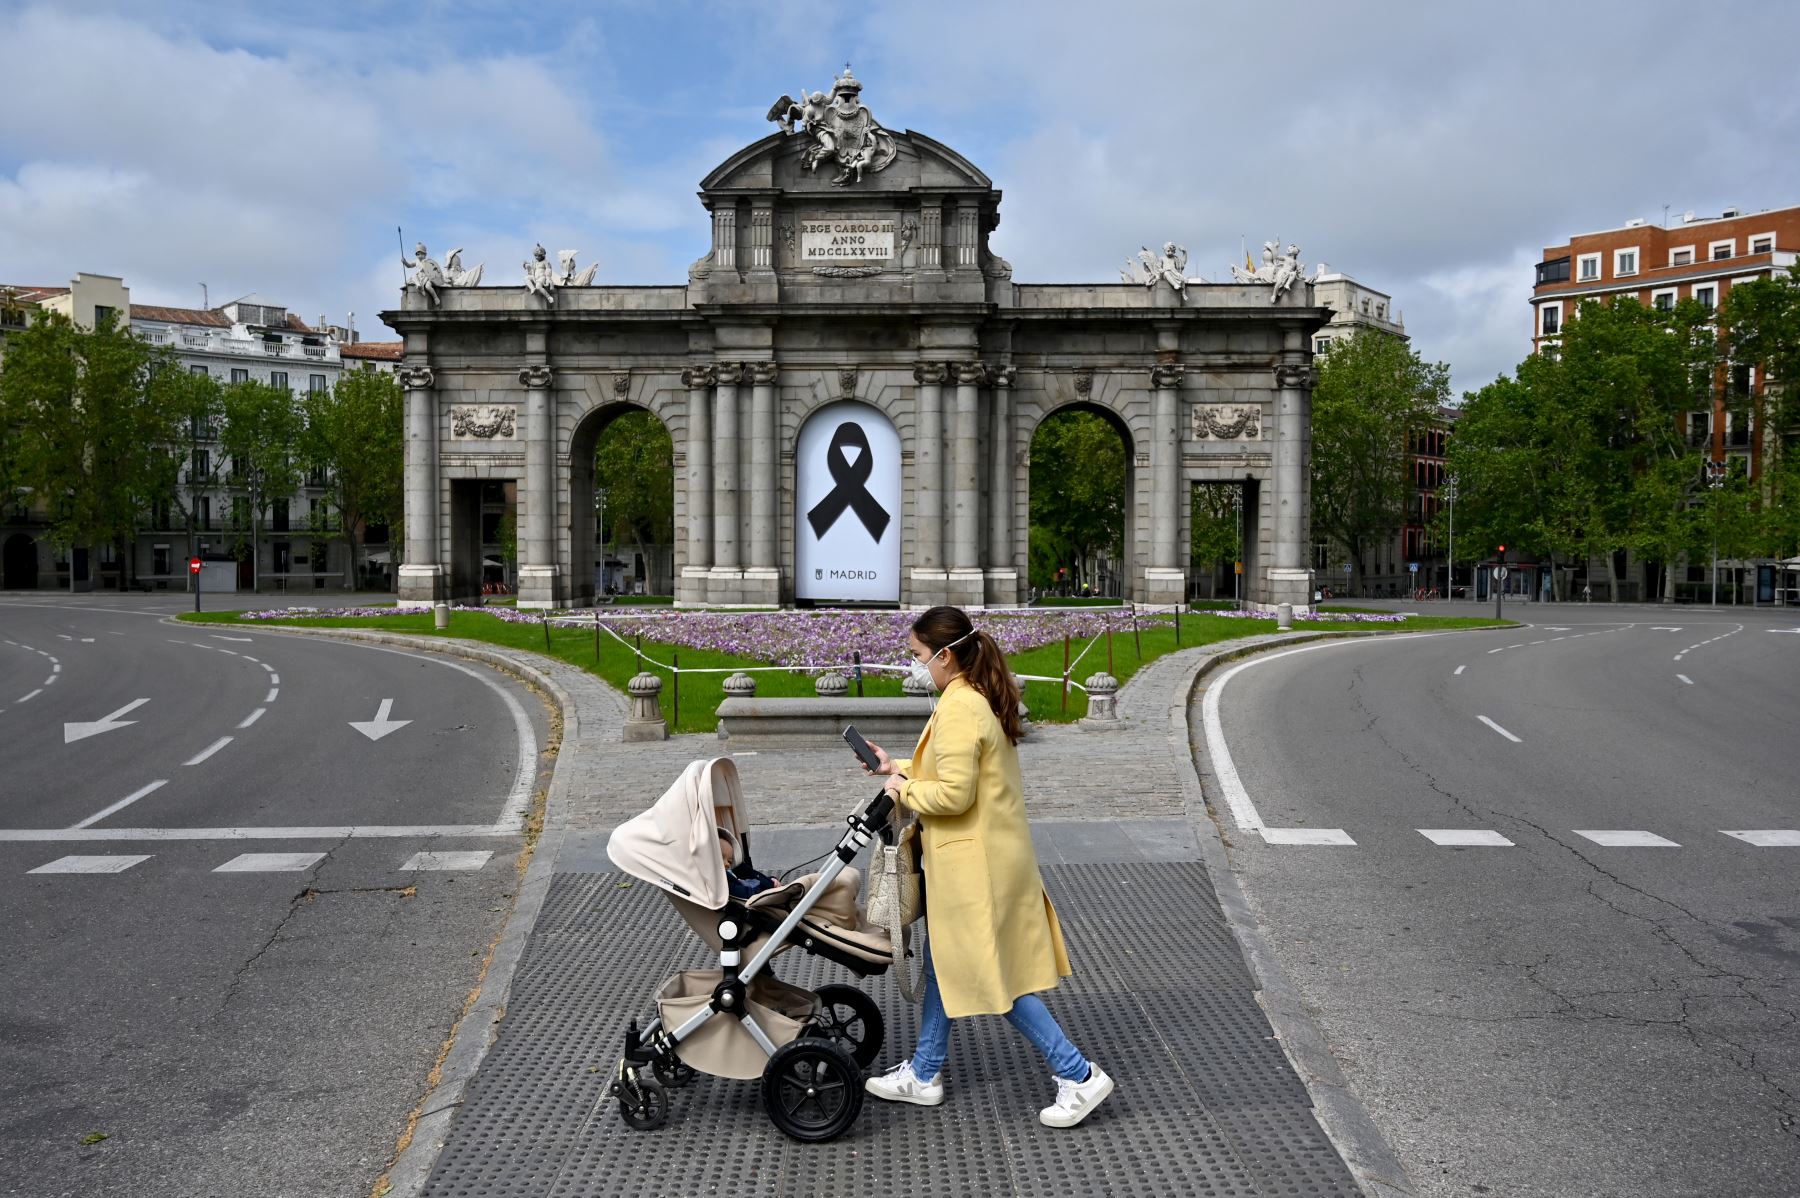 Una mujer empuja una carriola frente al monumento de la Puerta de Alcalá, en Madrid, durante un cierre nacional para prevenir la propagación del coronavirus. Foto: AFP.